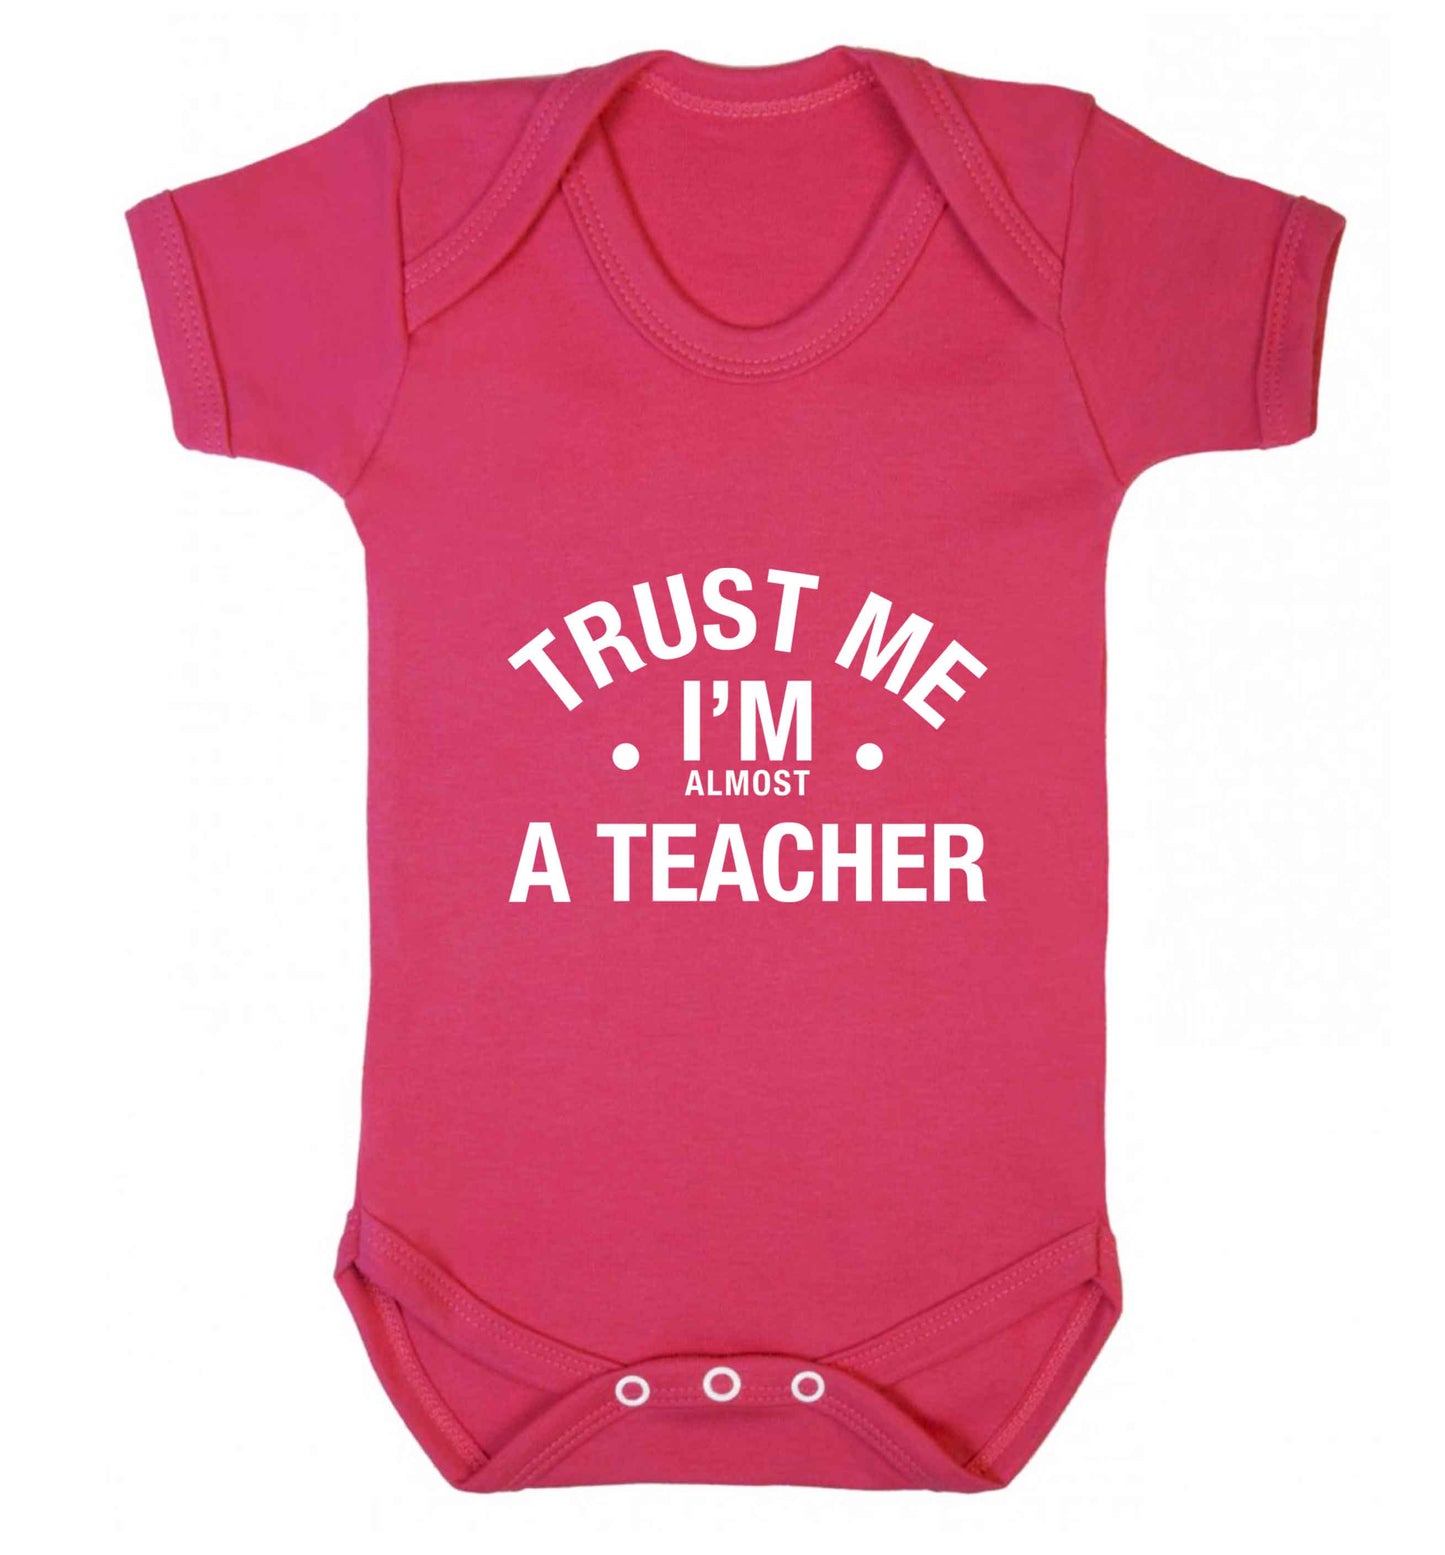 Trust me I'm almost a teacher baby vest dark pink 18-24 months